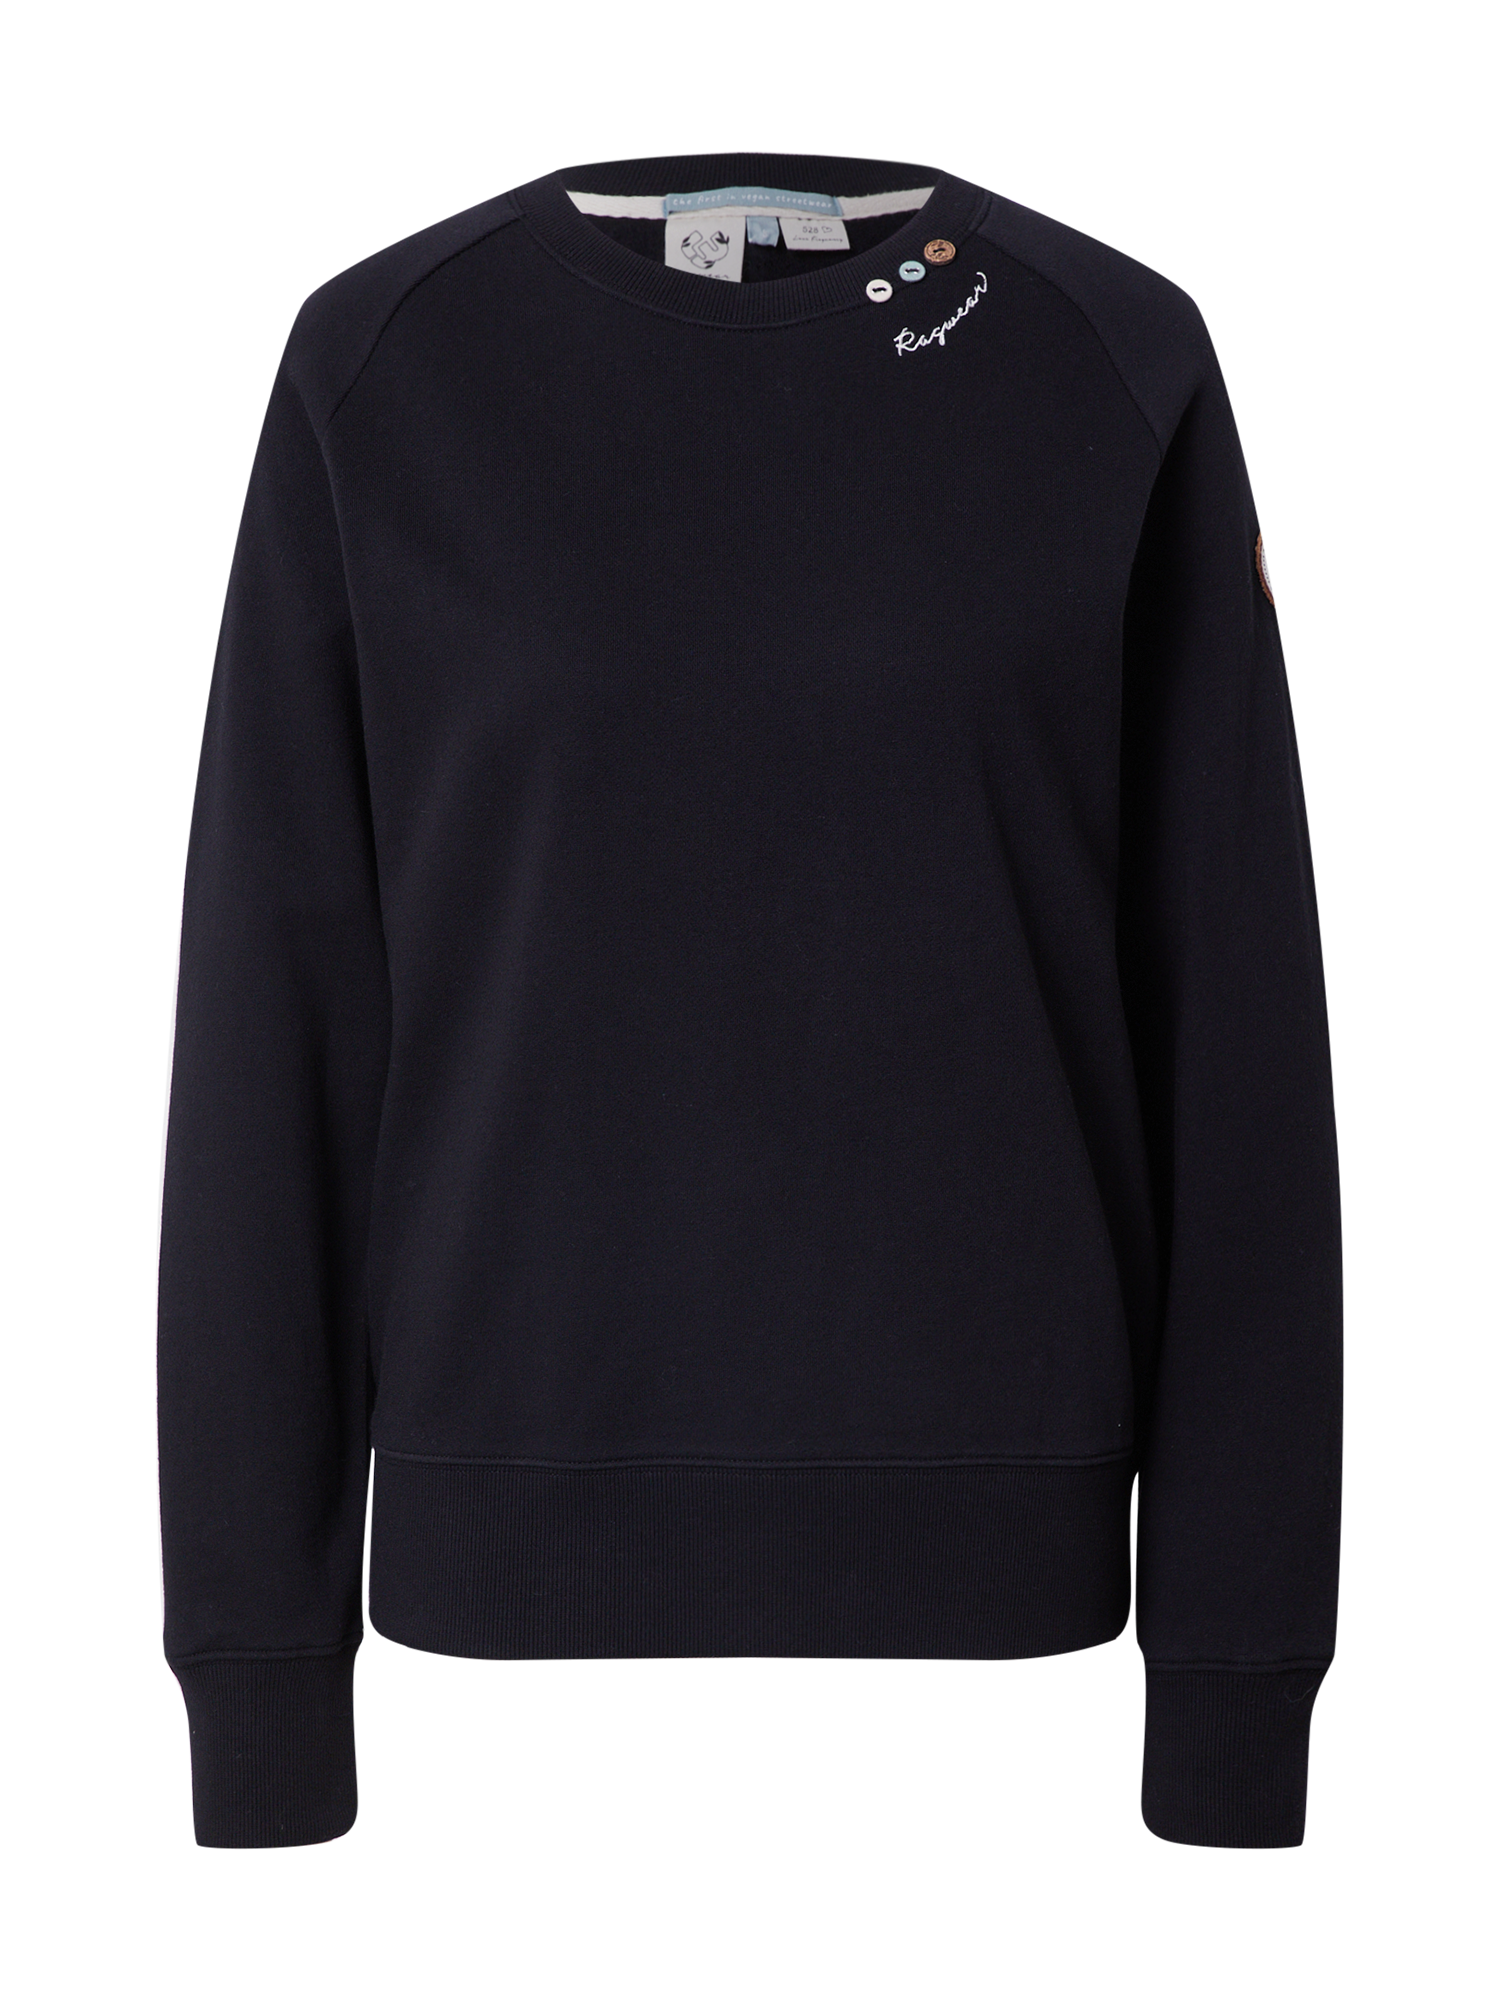 IxD6X Kobiety Ragwear Bluzka sportowa FLORA w kolorze Czarnym 